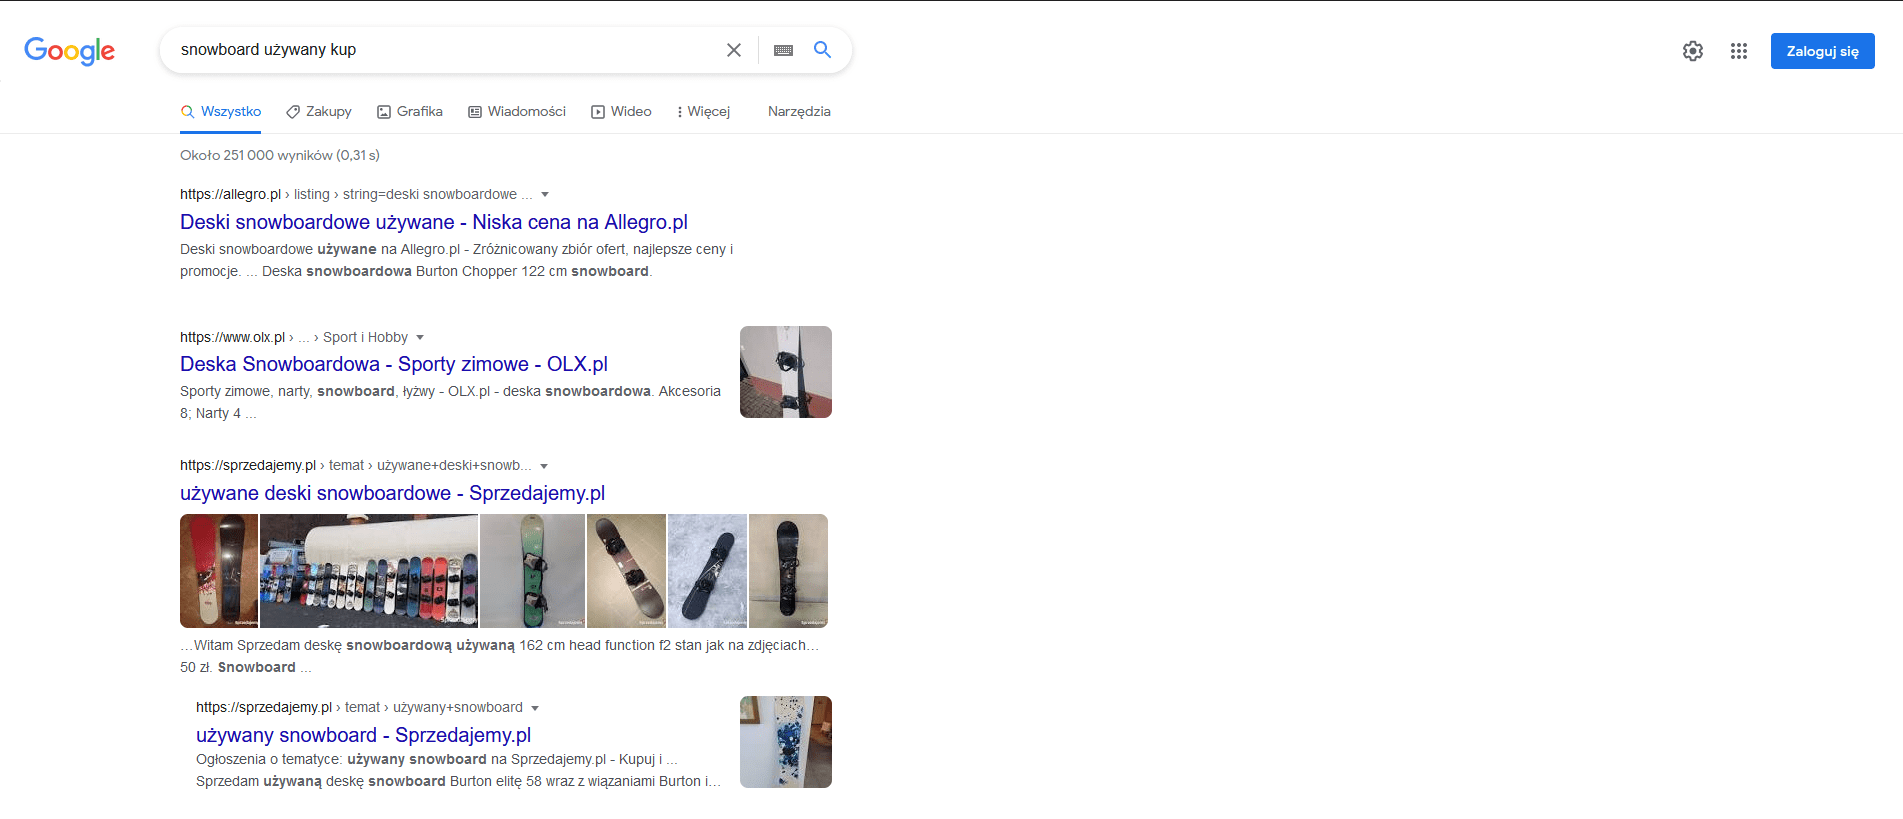 Wyszukiwanie w Google